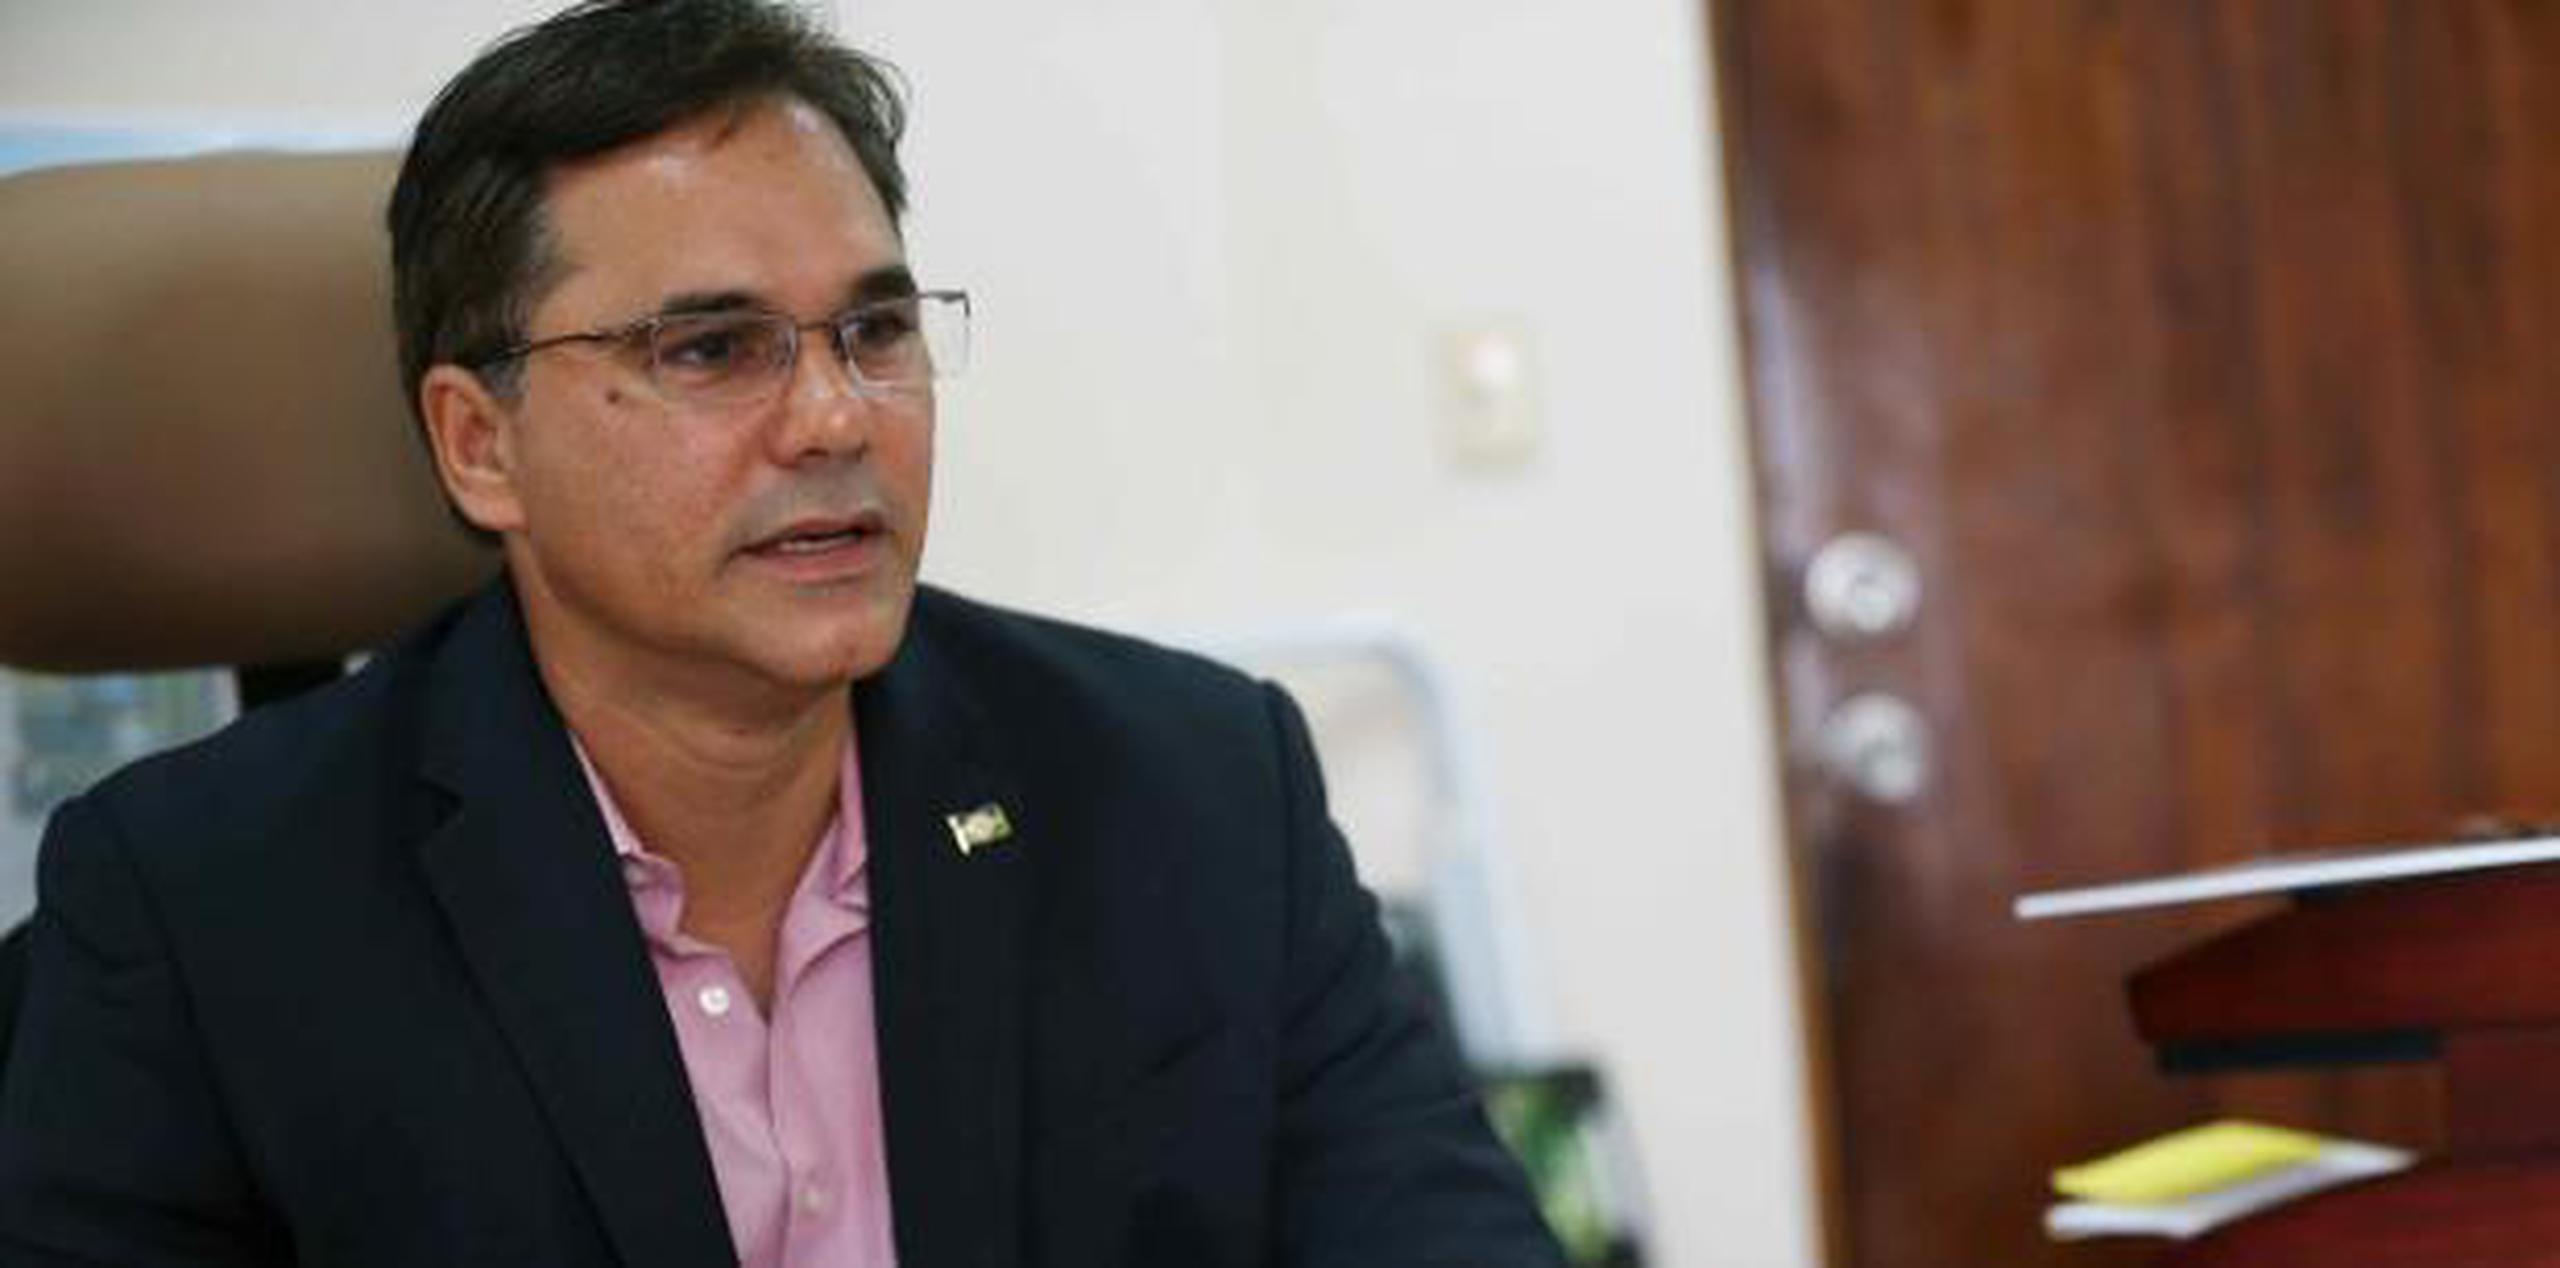 Jesús Márquez Rodríguez, alcalde de Luquillo por el Partido Popular Democrático. (Archivo)